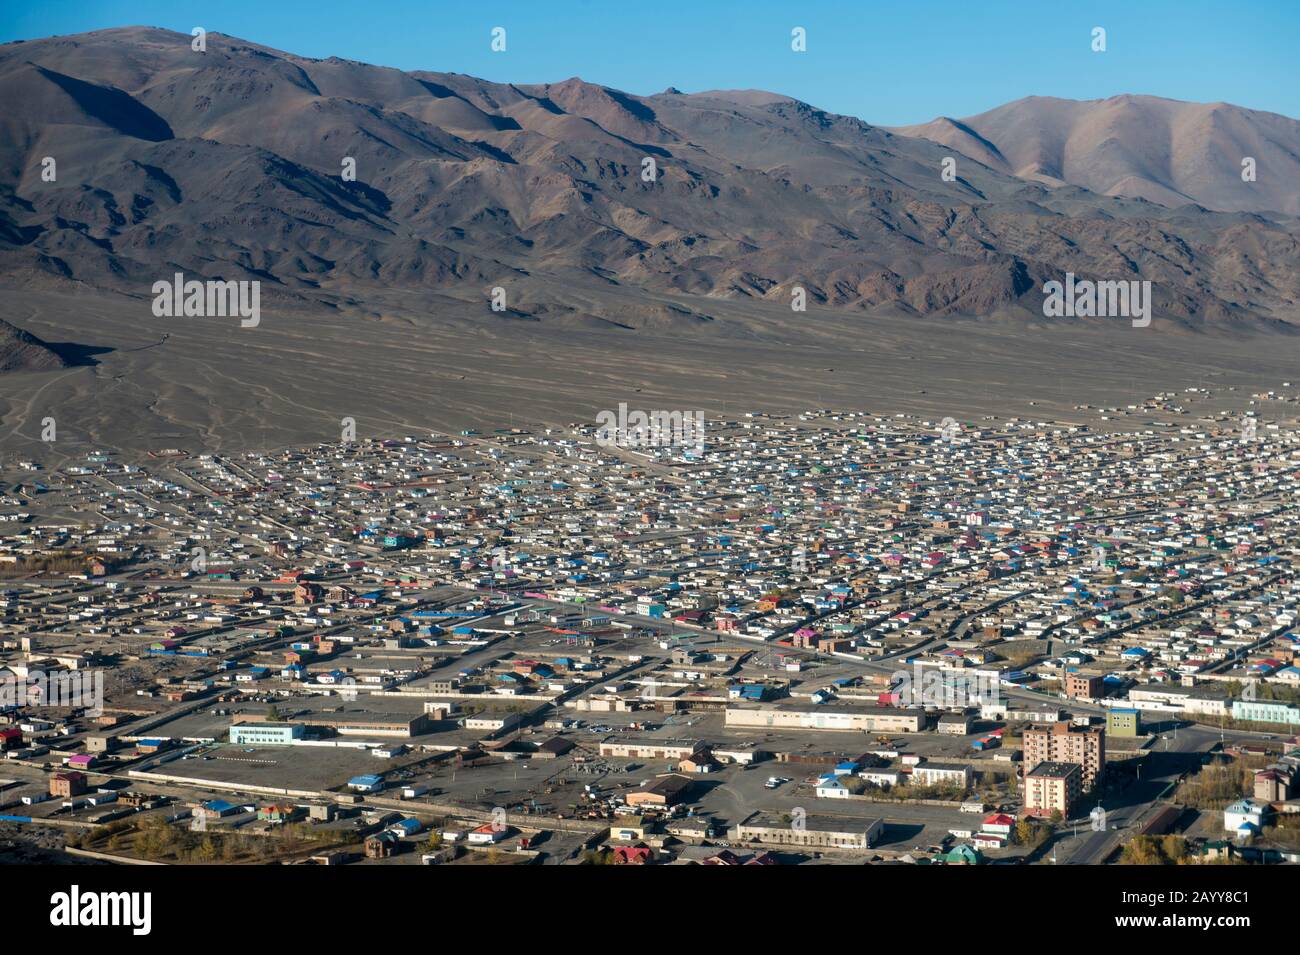 Luftbild Ulgii auf dem Flug von Ulaanbaatar nach Ulgii (Ölgii) in der westlichen Mongolei. Stockfoto